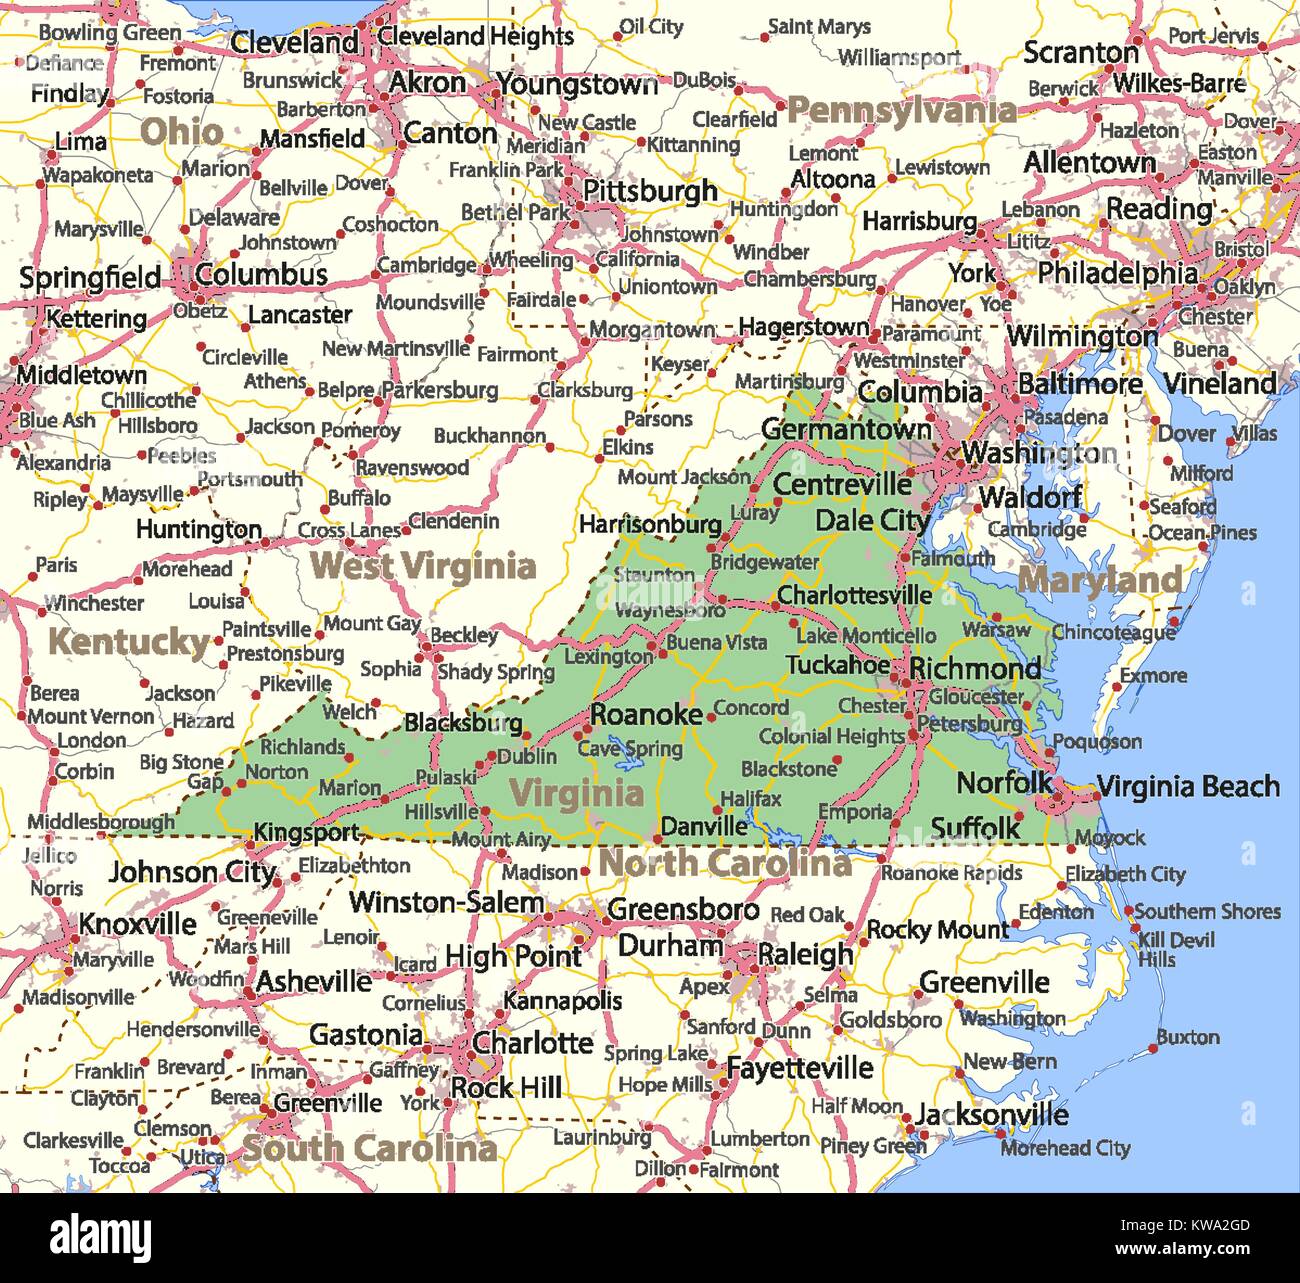 Mappa della Virginia. Mostra i confini, zone urbane, nomi di località, strade e autostrade. Proiezione: proiezione di Mercatore. Illustrazione Vettoriale